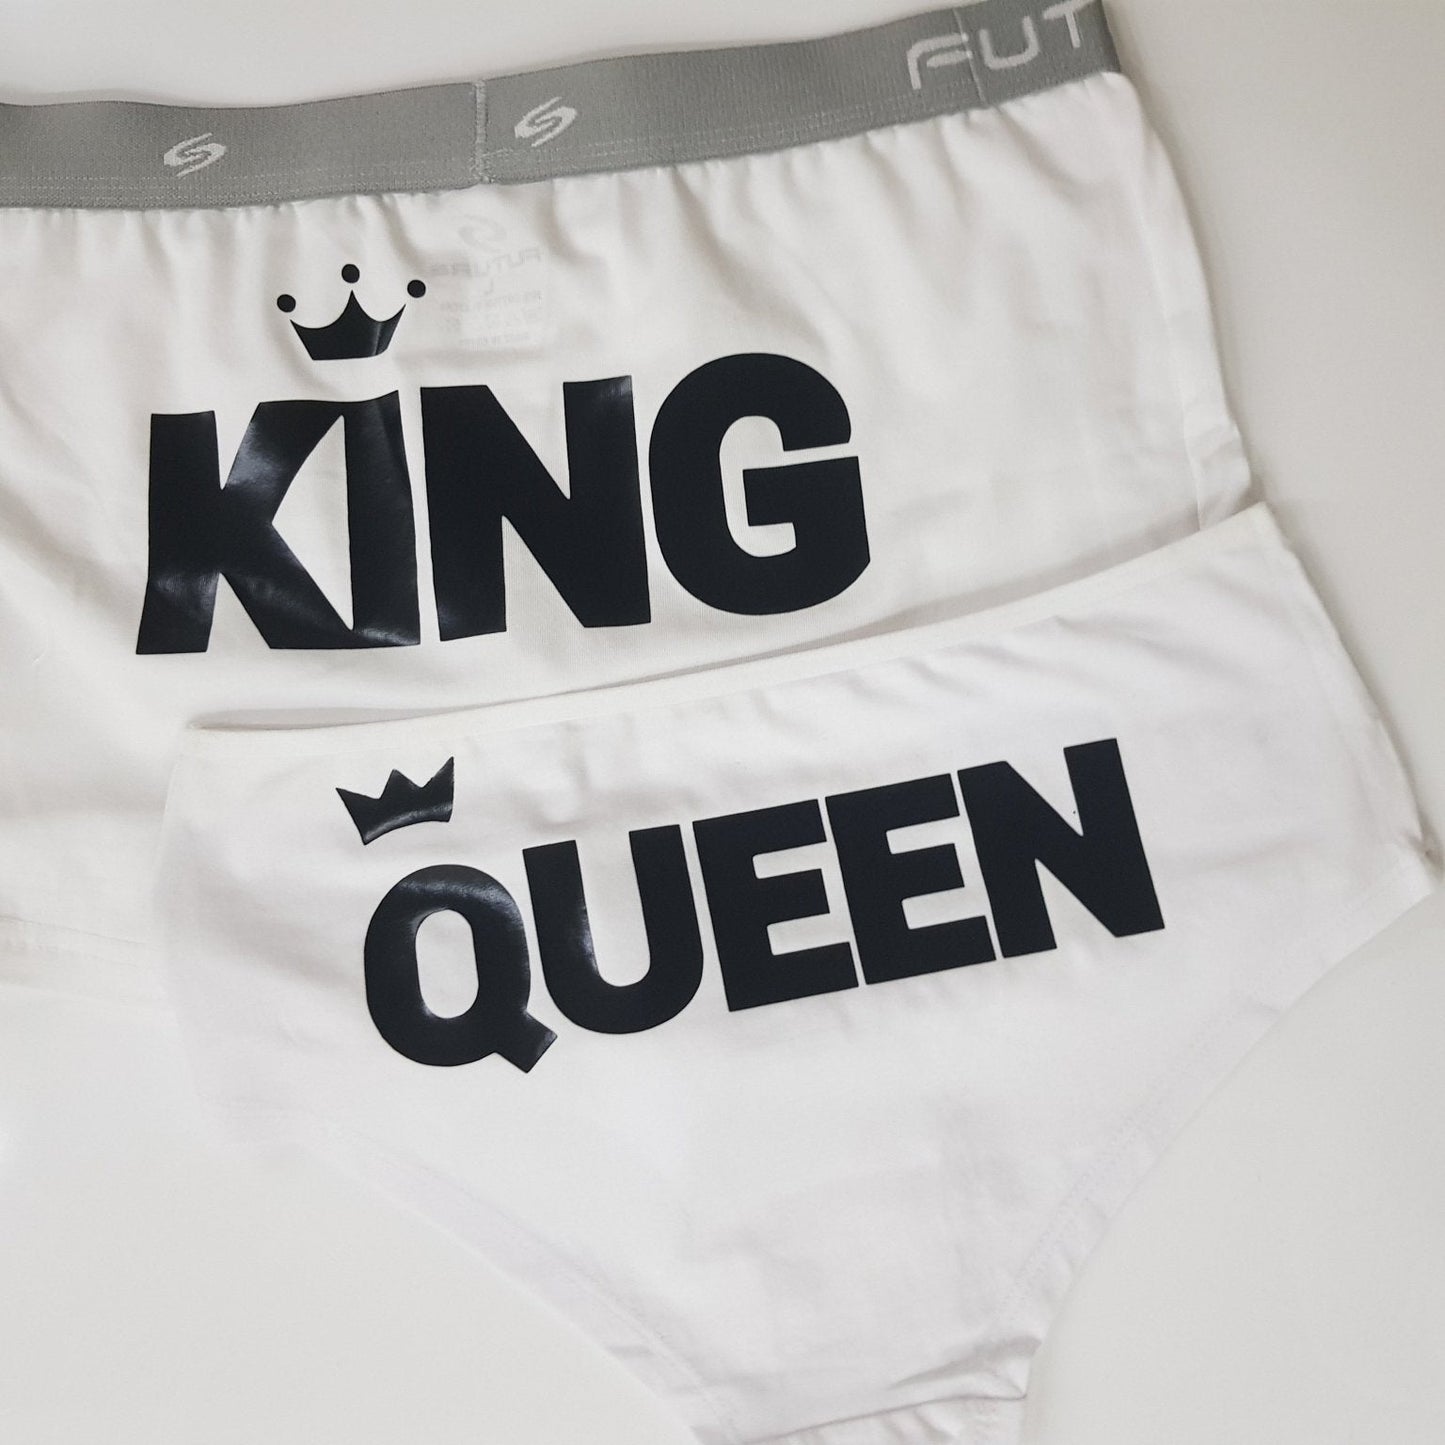 Couple underwear - King/Queen - Etba3lly